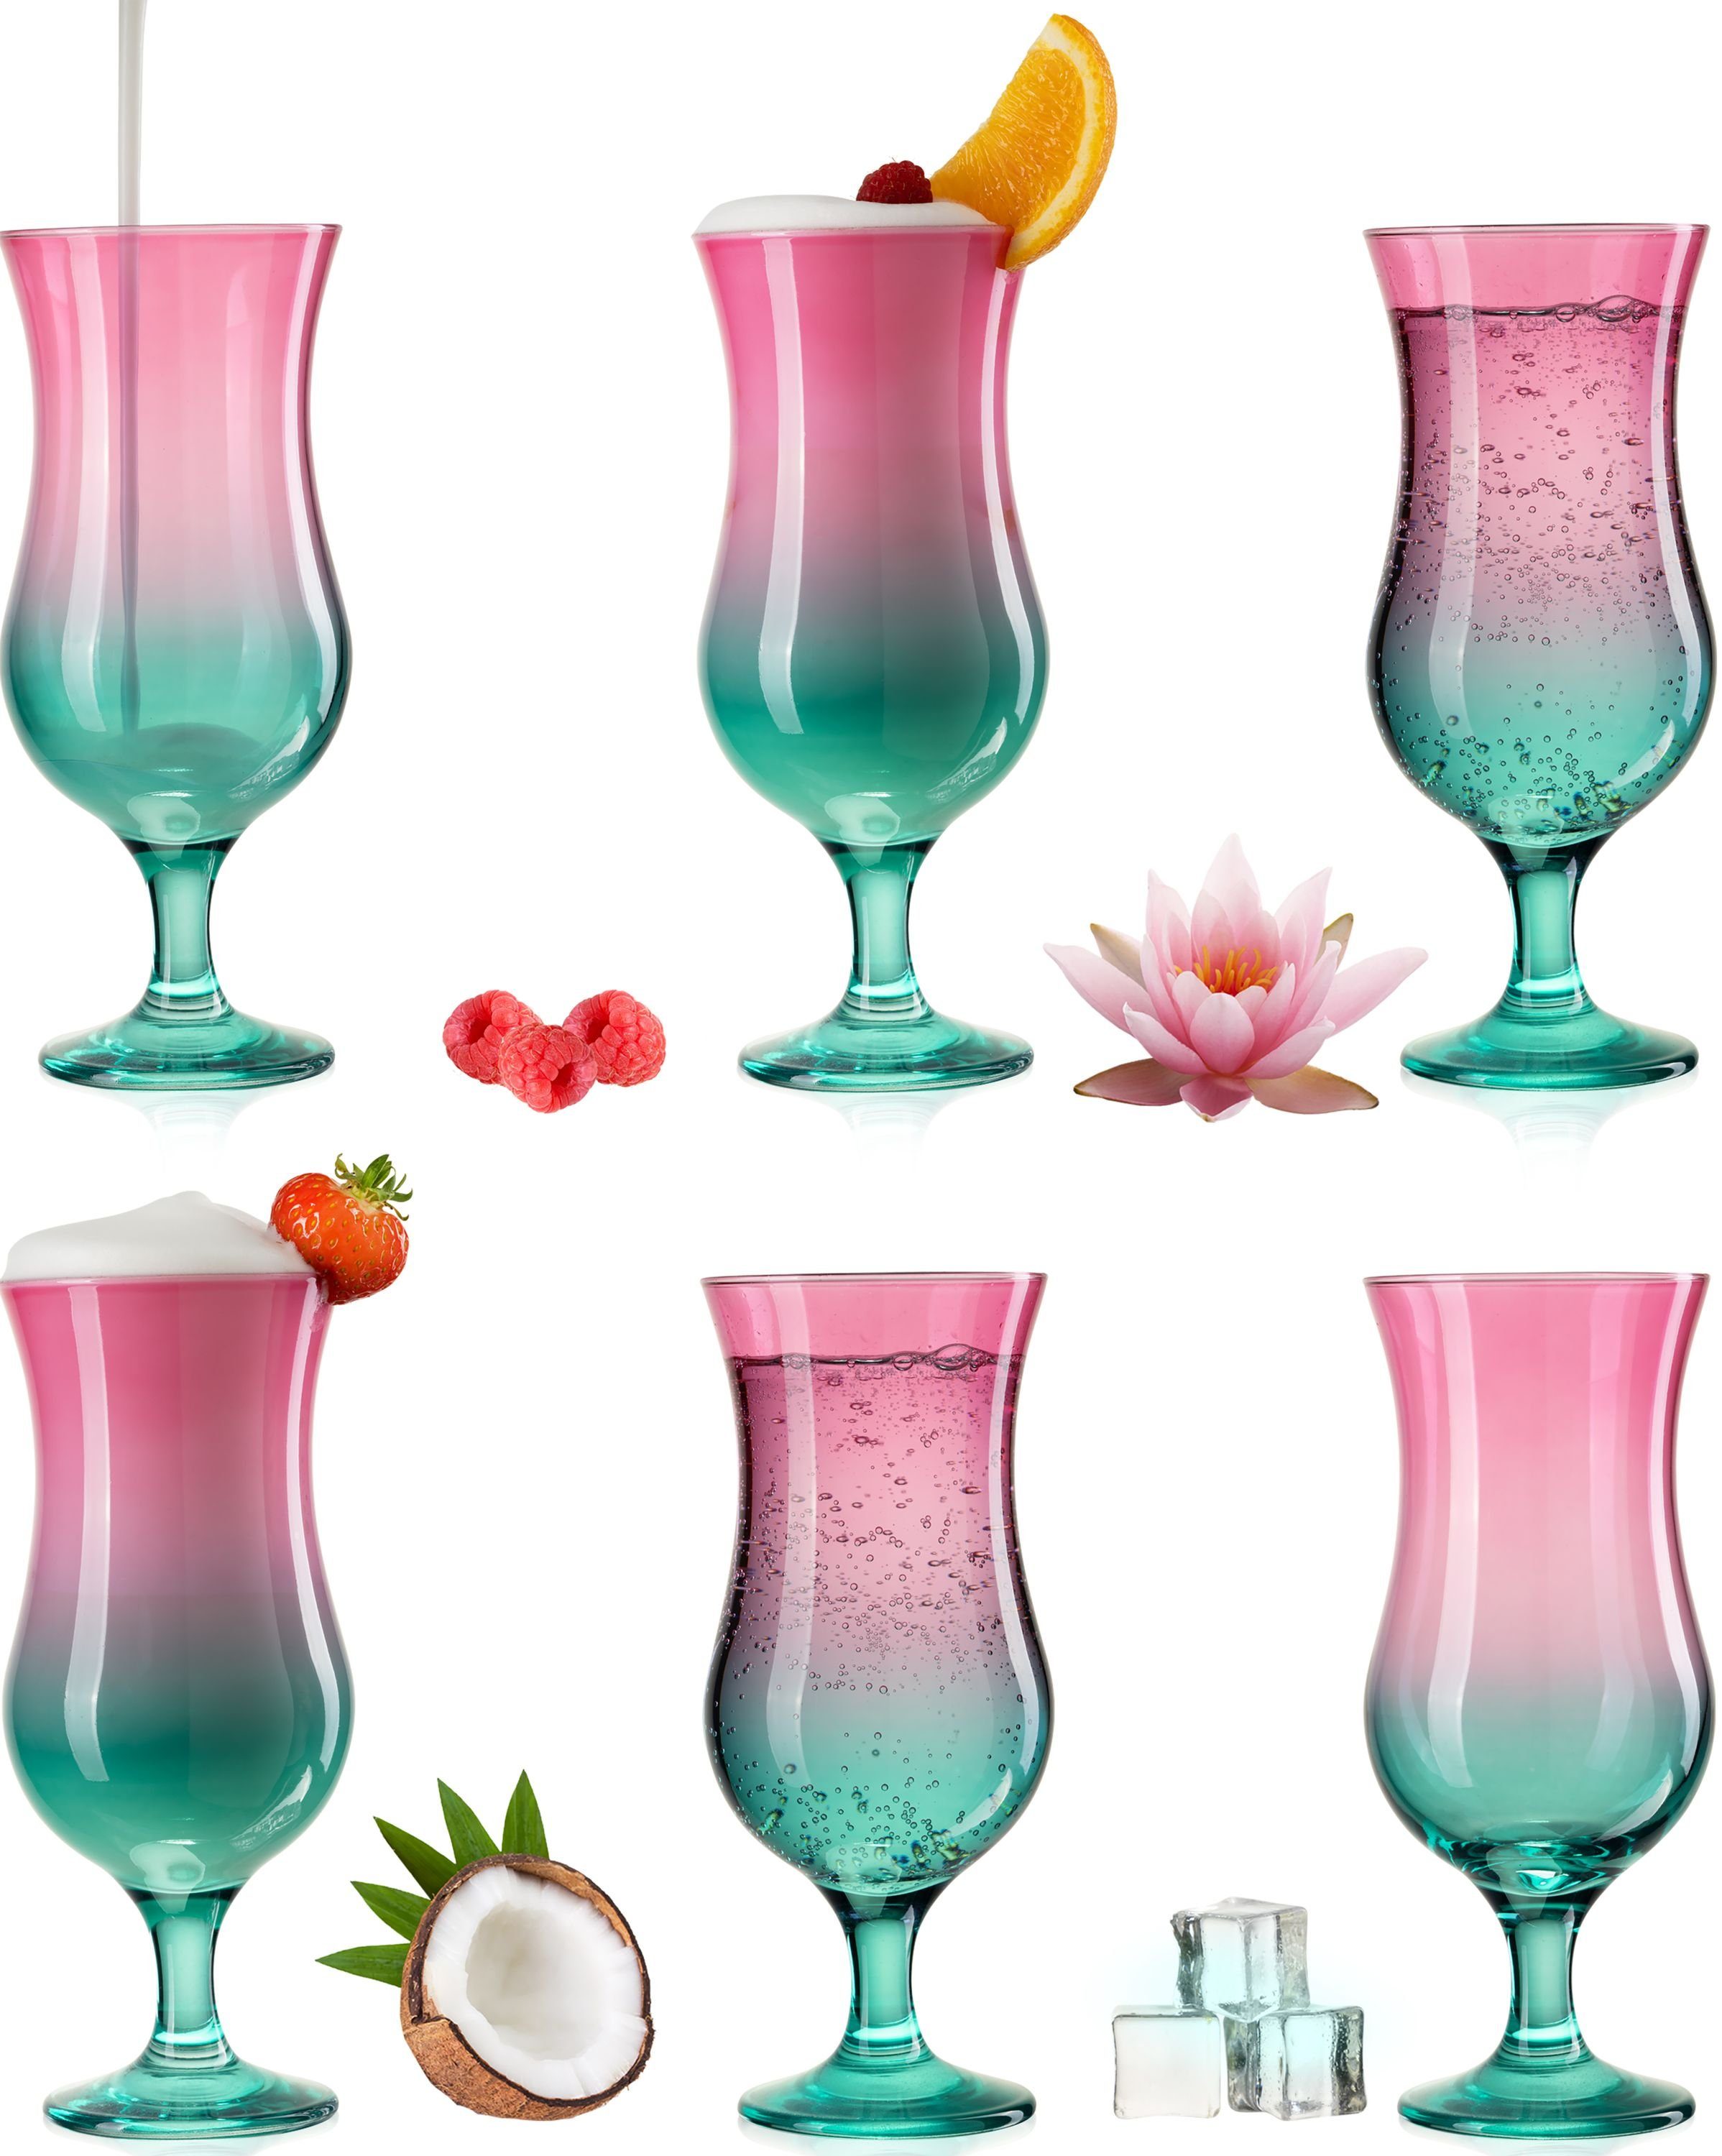 PLATINUX Cocktailglas Cocktailgläser Rosa-Türkis, Glas, Bunt 400ml (max. 470ml) Longdrinkgläser Partygläser Milkshake Groß